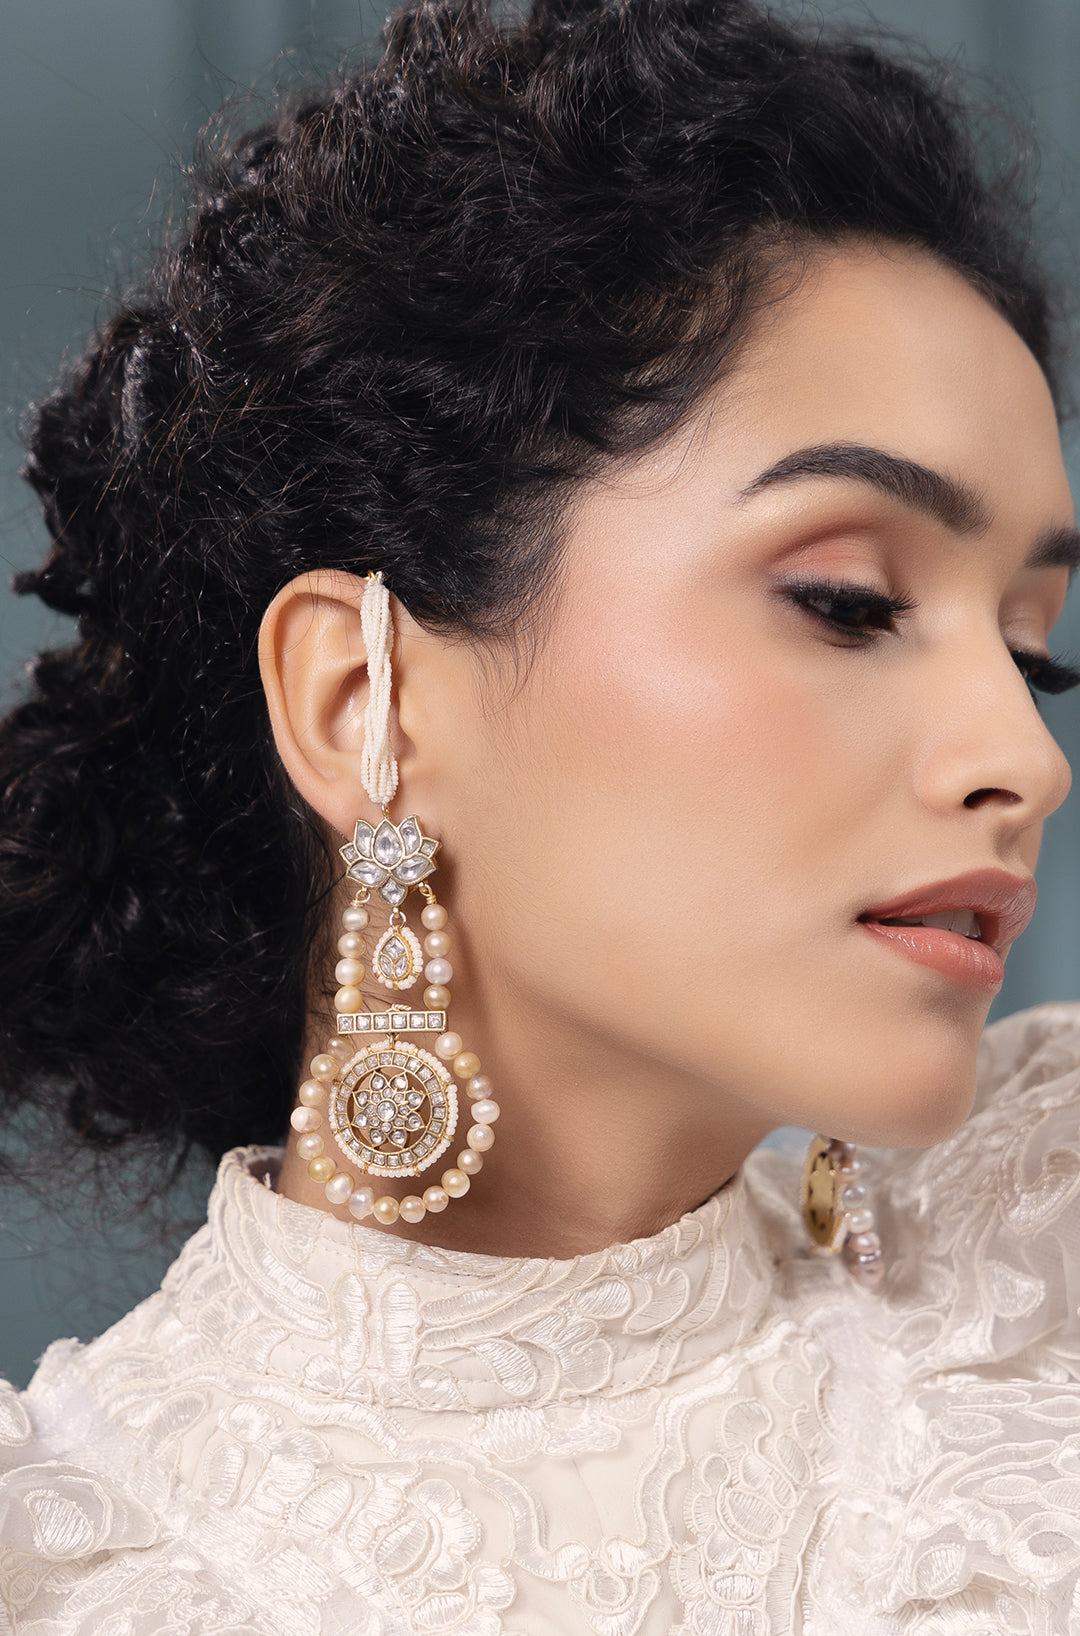 Polki-Pearl Elegant Earrings